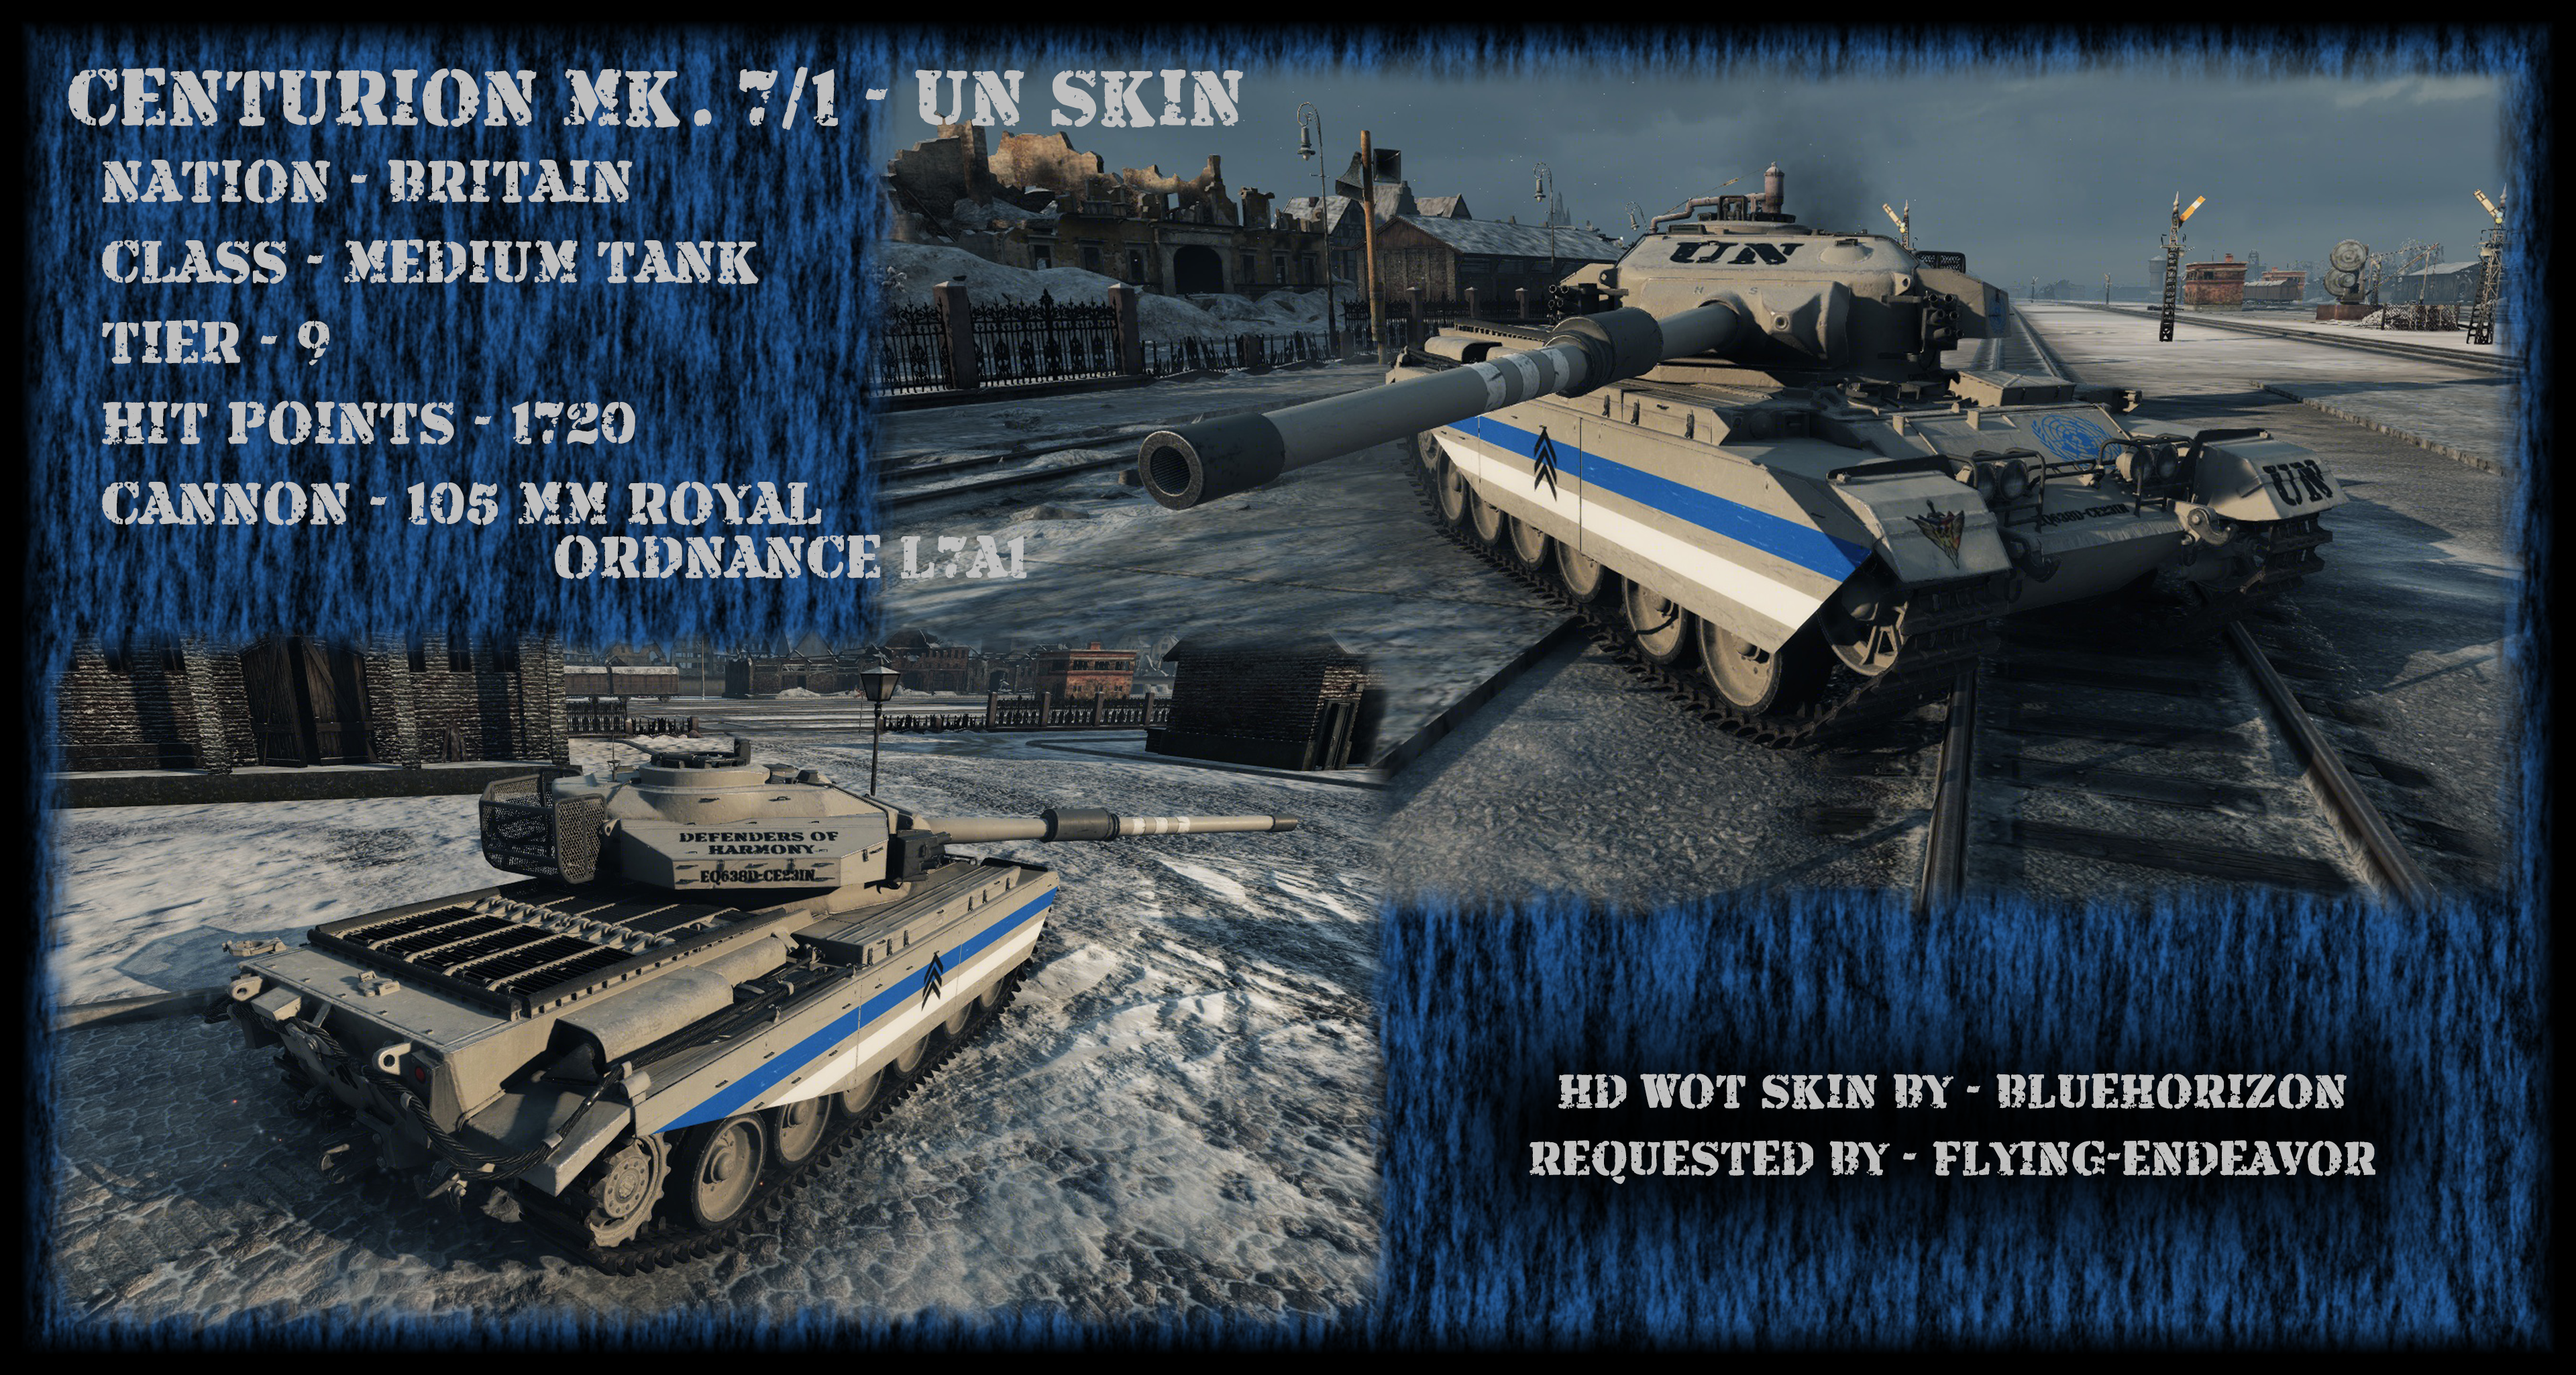 Hd Wot Skin Centurion Mk 7 1 Un By Bluehorizon Eq On Deviantart